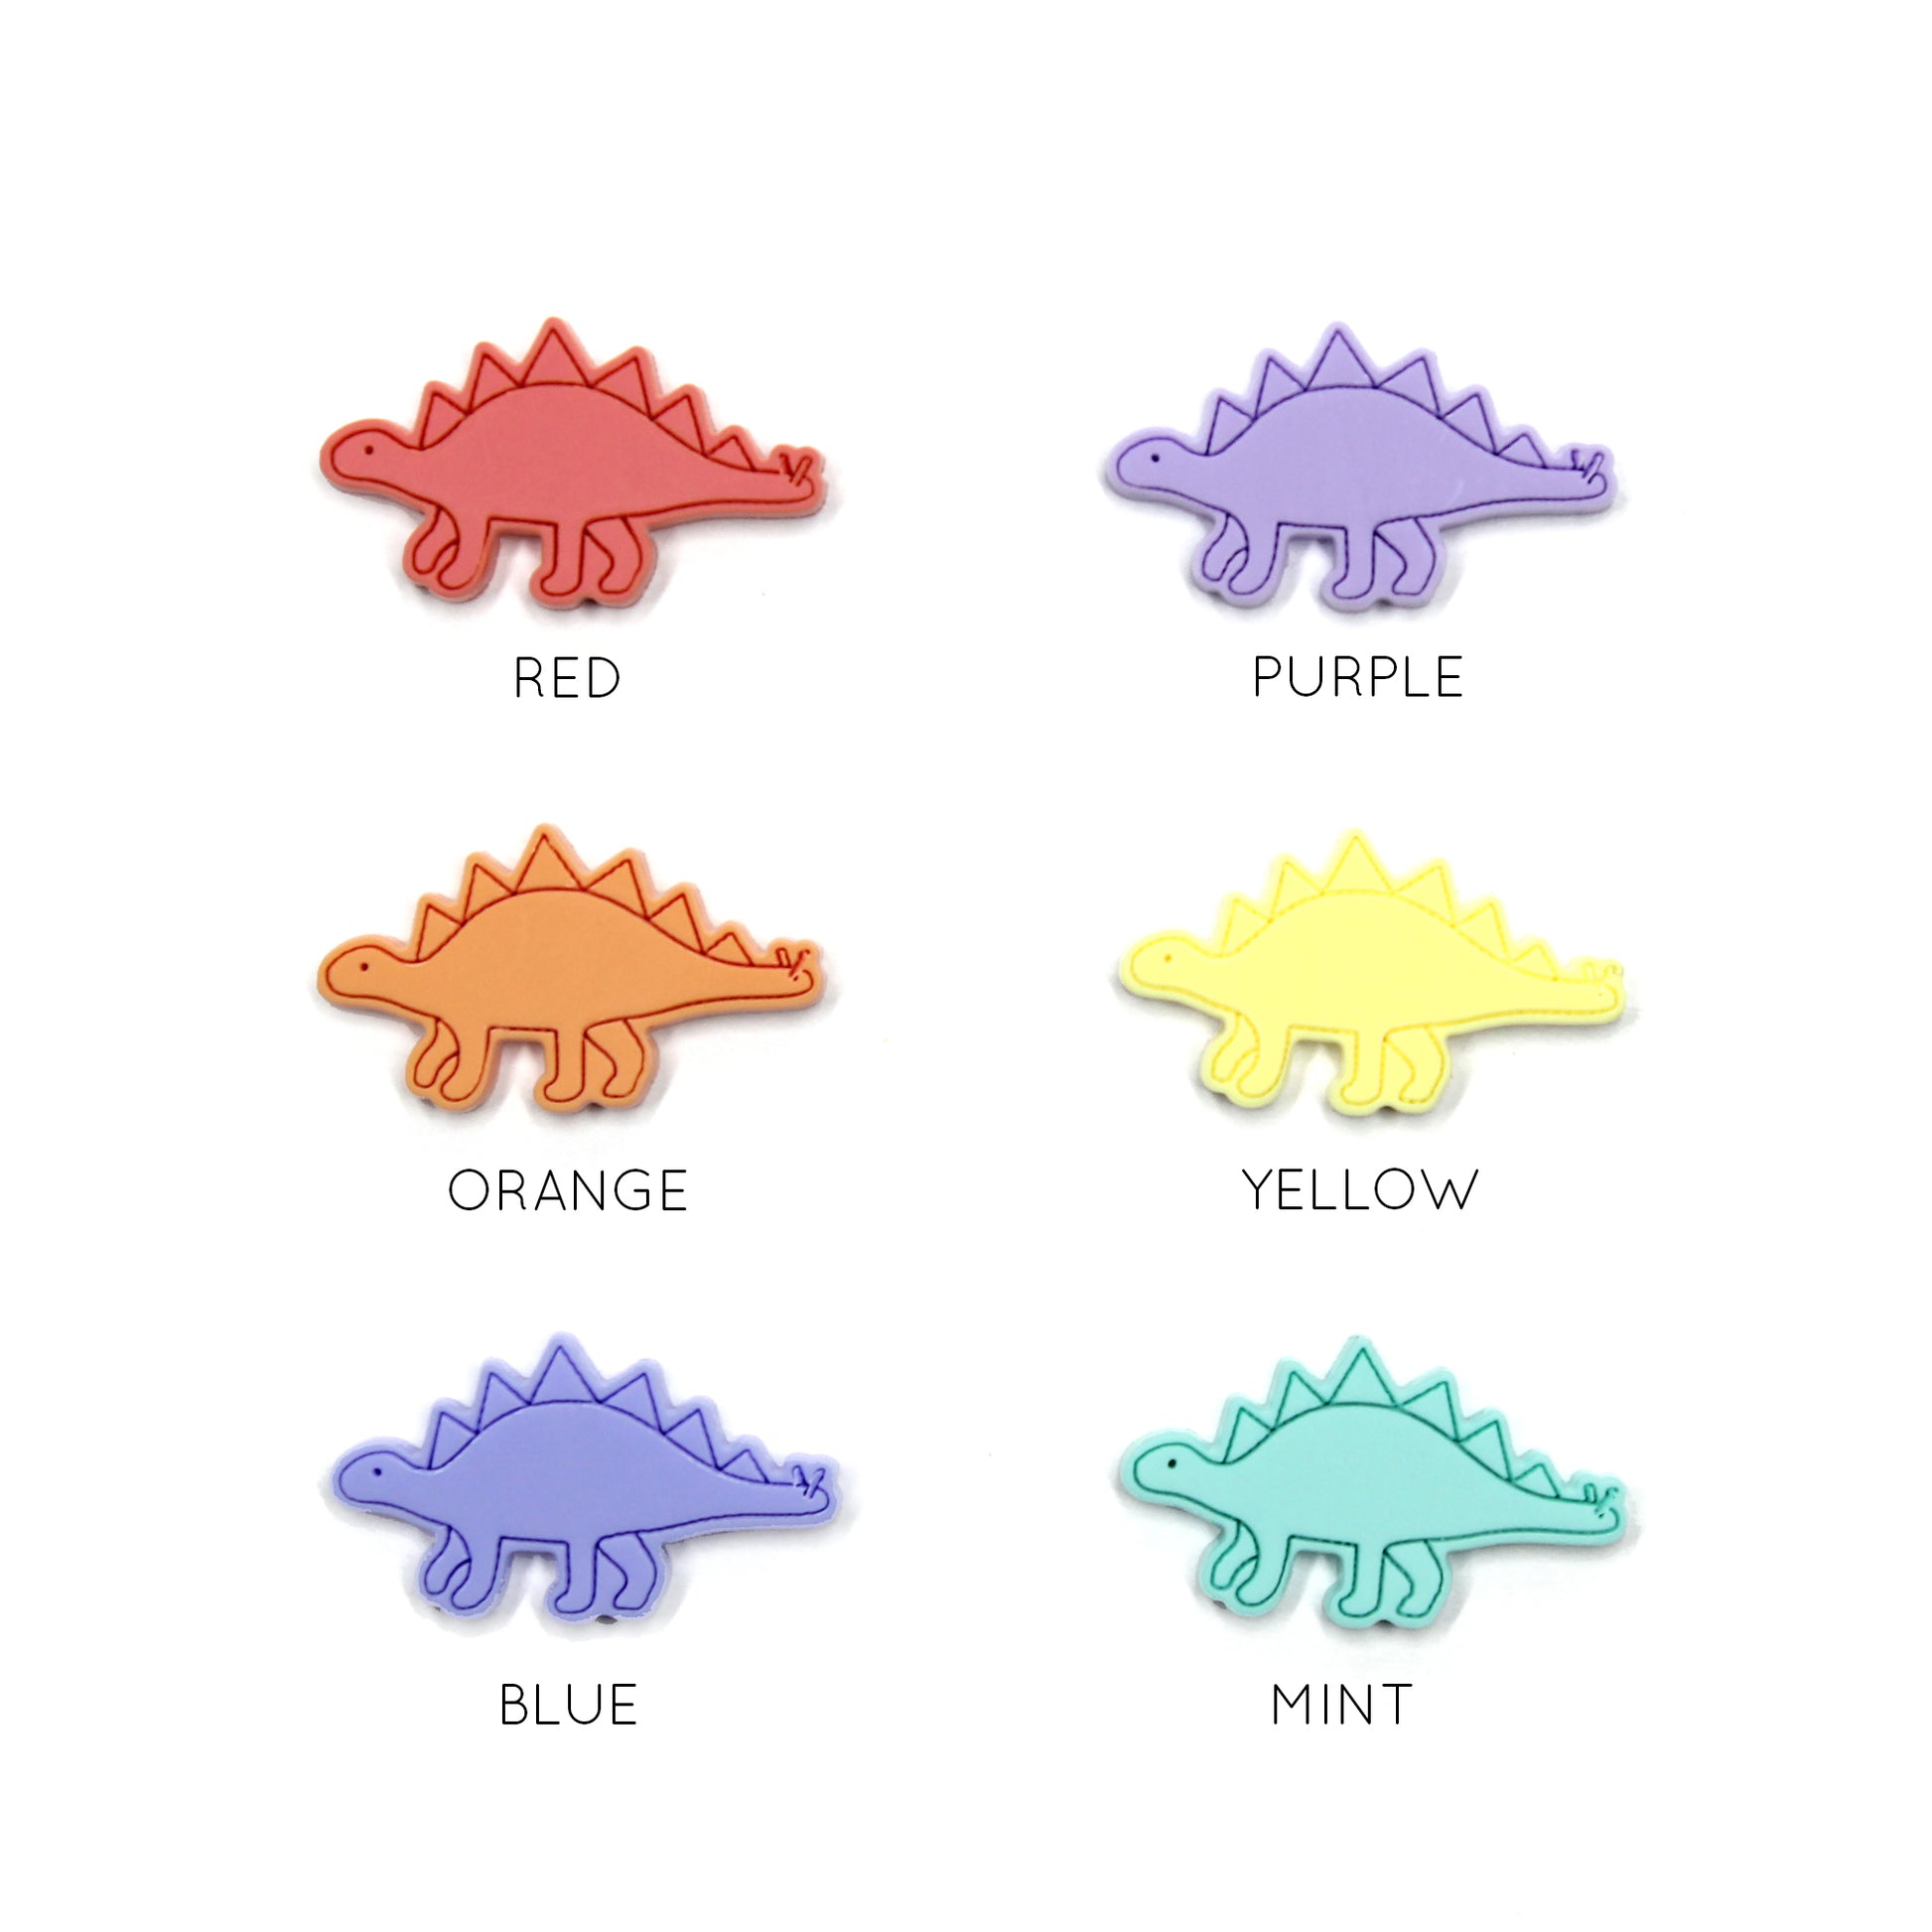 Image of 6 stegosaurus dinosaur, one of each colour option. Each dinosaur has the colour of the dinosaur written below it